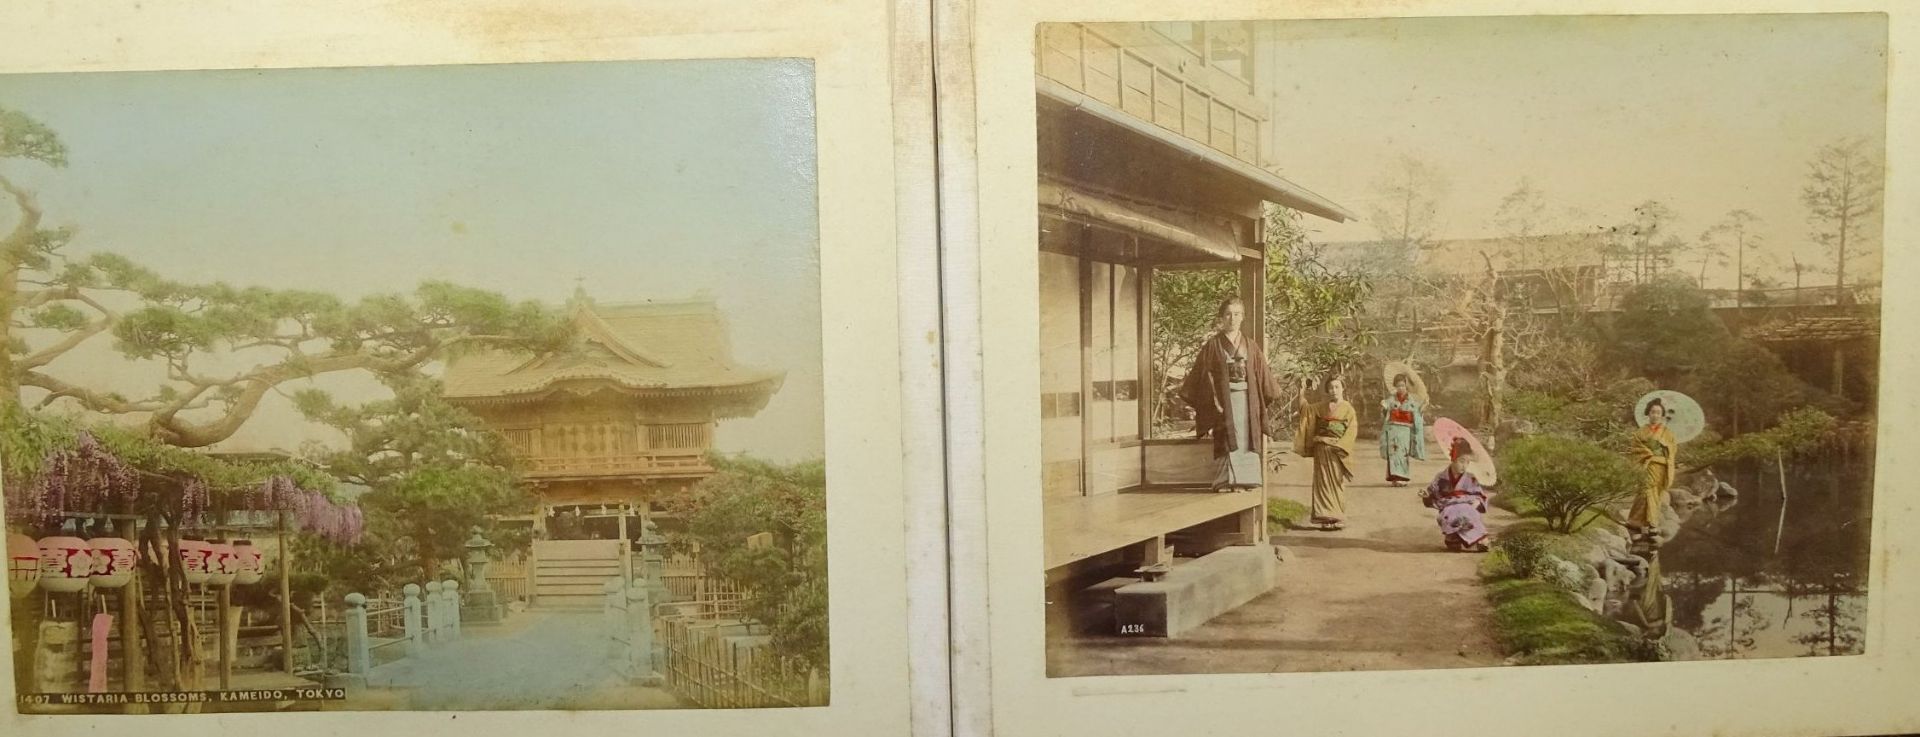 Lackalbum (27x35 cm) mit 44 grossformatigen Foto-Abzügen, Japan, eingeklebt, beschriftet, Alben - Bild 14 aus 17